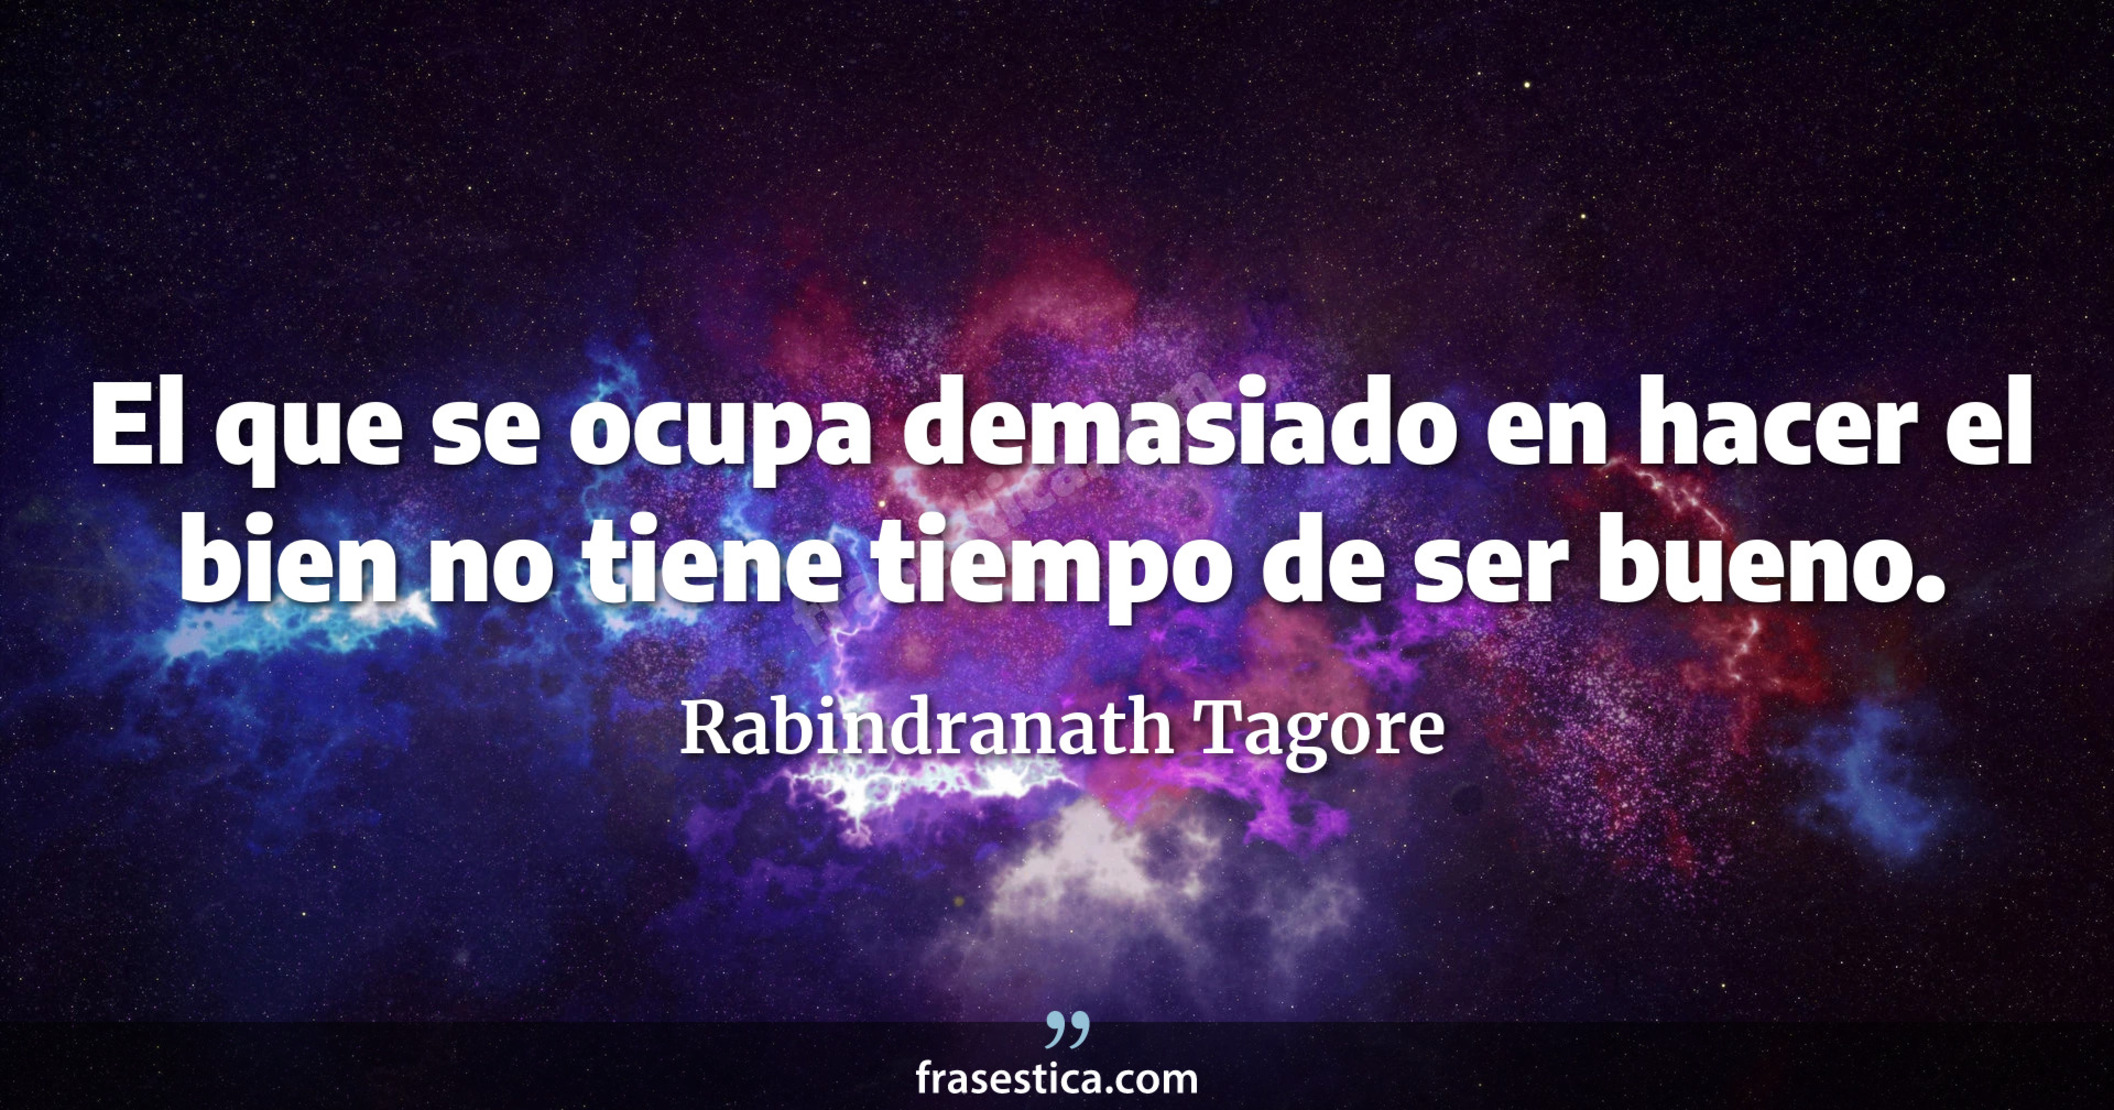 El que se ocupa demasiado en hacer el bien no tiene tiempo de ser bueno. - Rabindranath Tagore